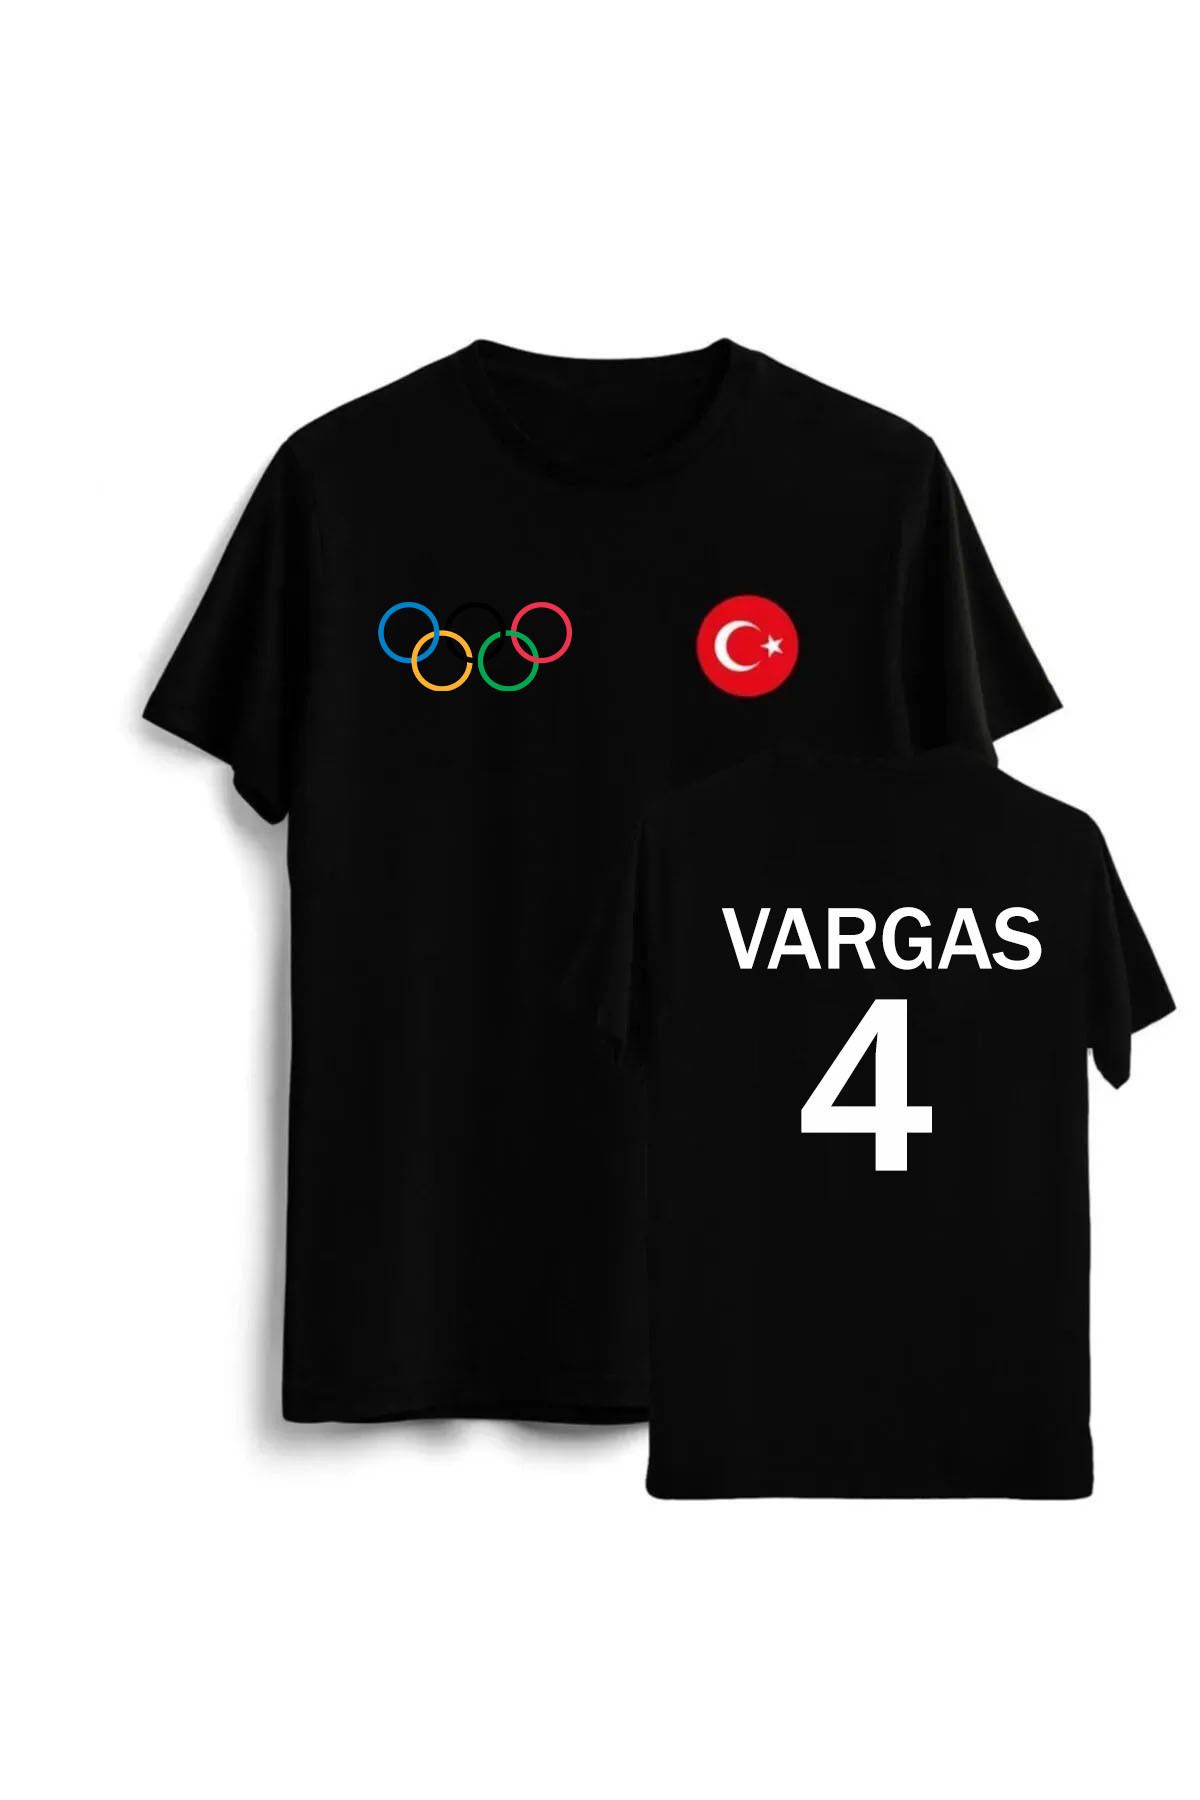 Pisa Art Türkiye Voleybol Milli Takım Olimpiyatlar Melissa Vargas Tasarımlı T-Shirt